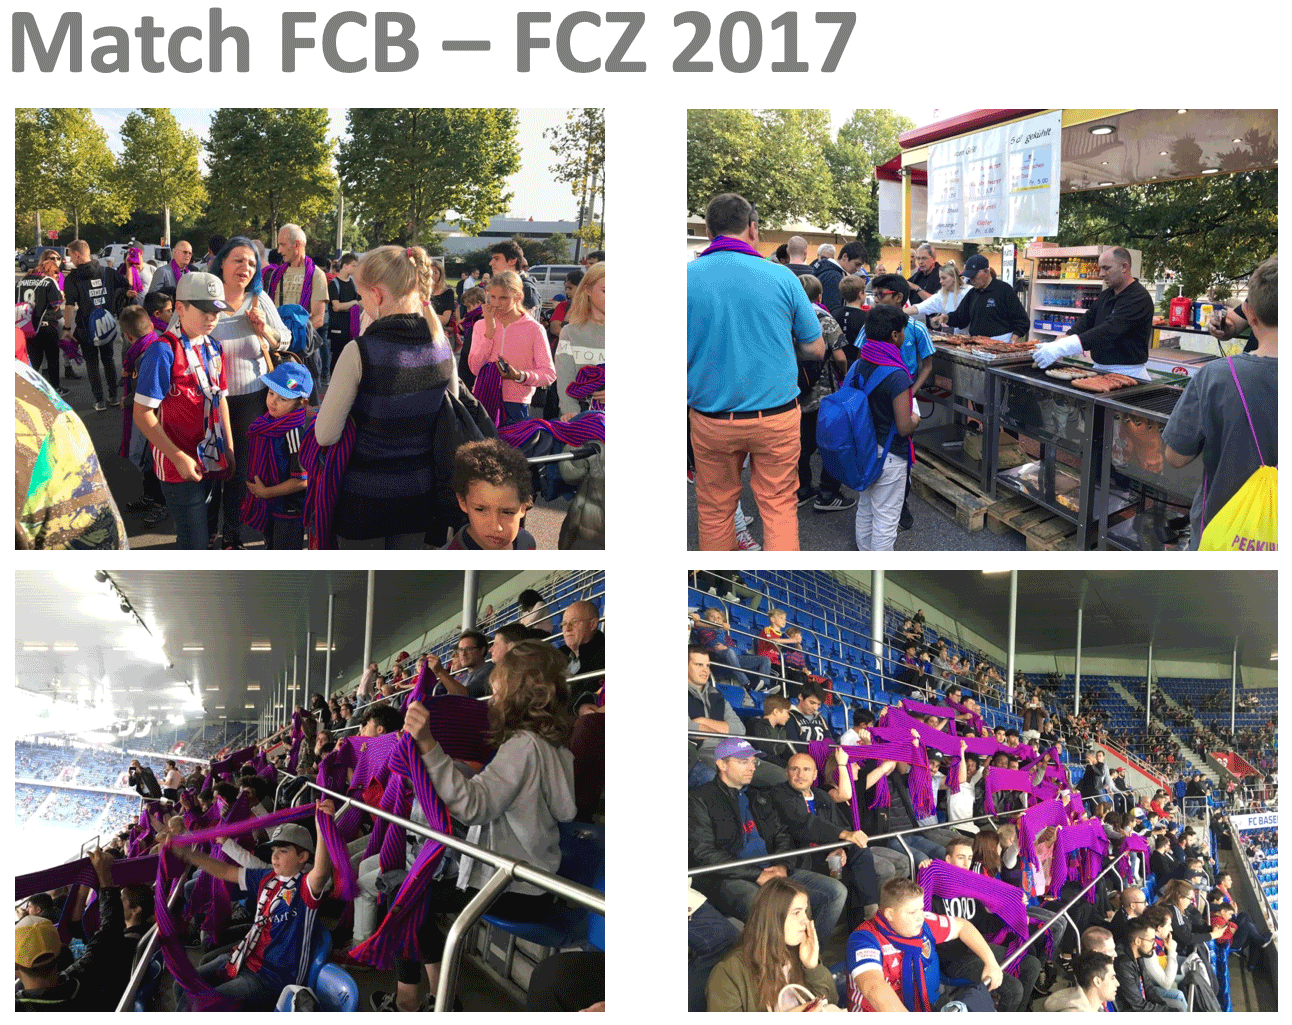 Kinder besuchen am Match Basel gegen Zürich auch einen Wurststand.